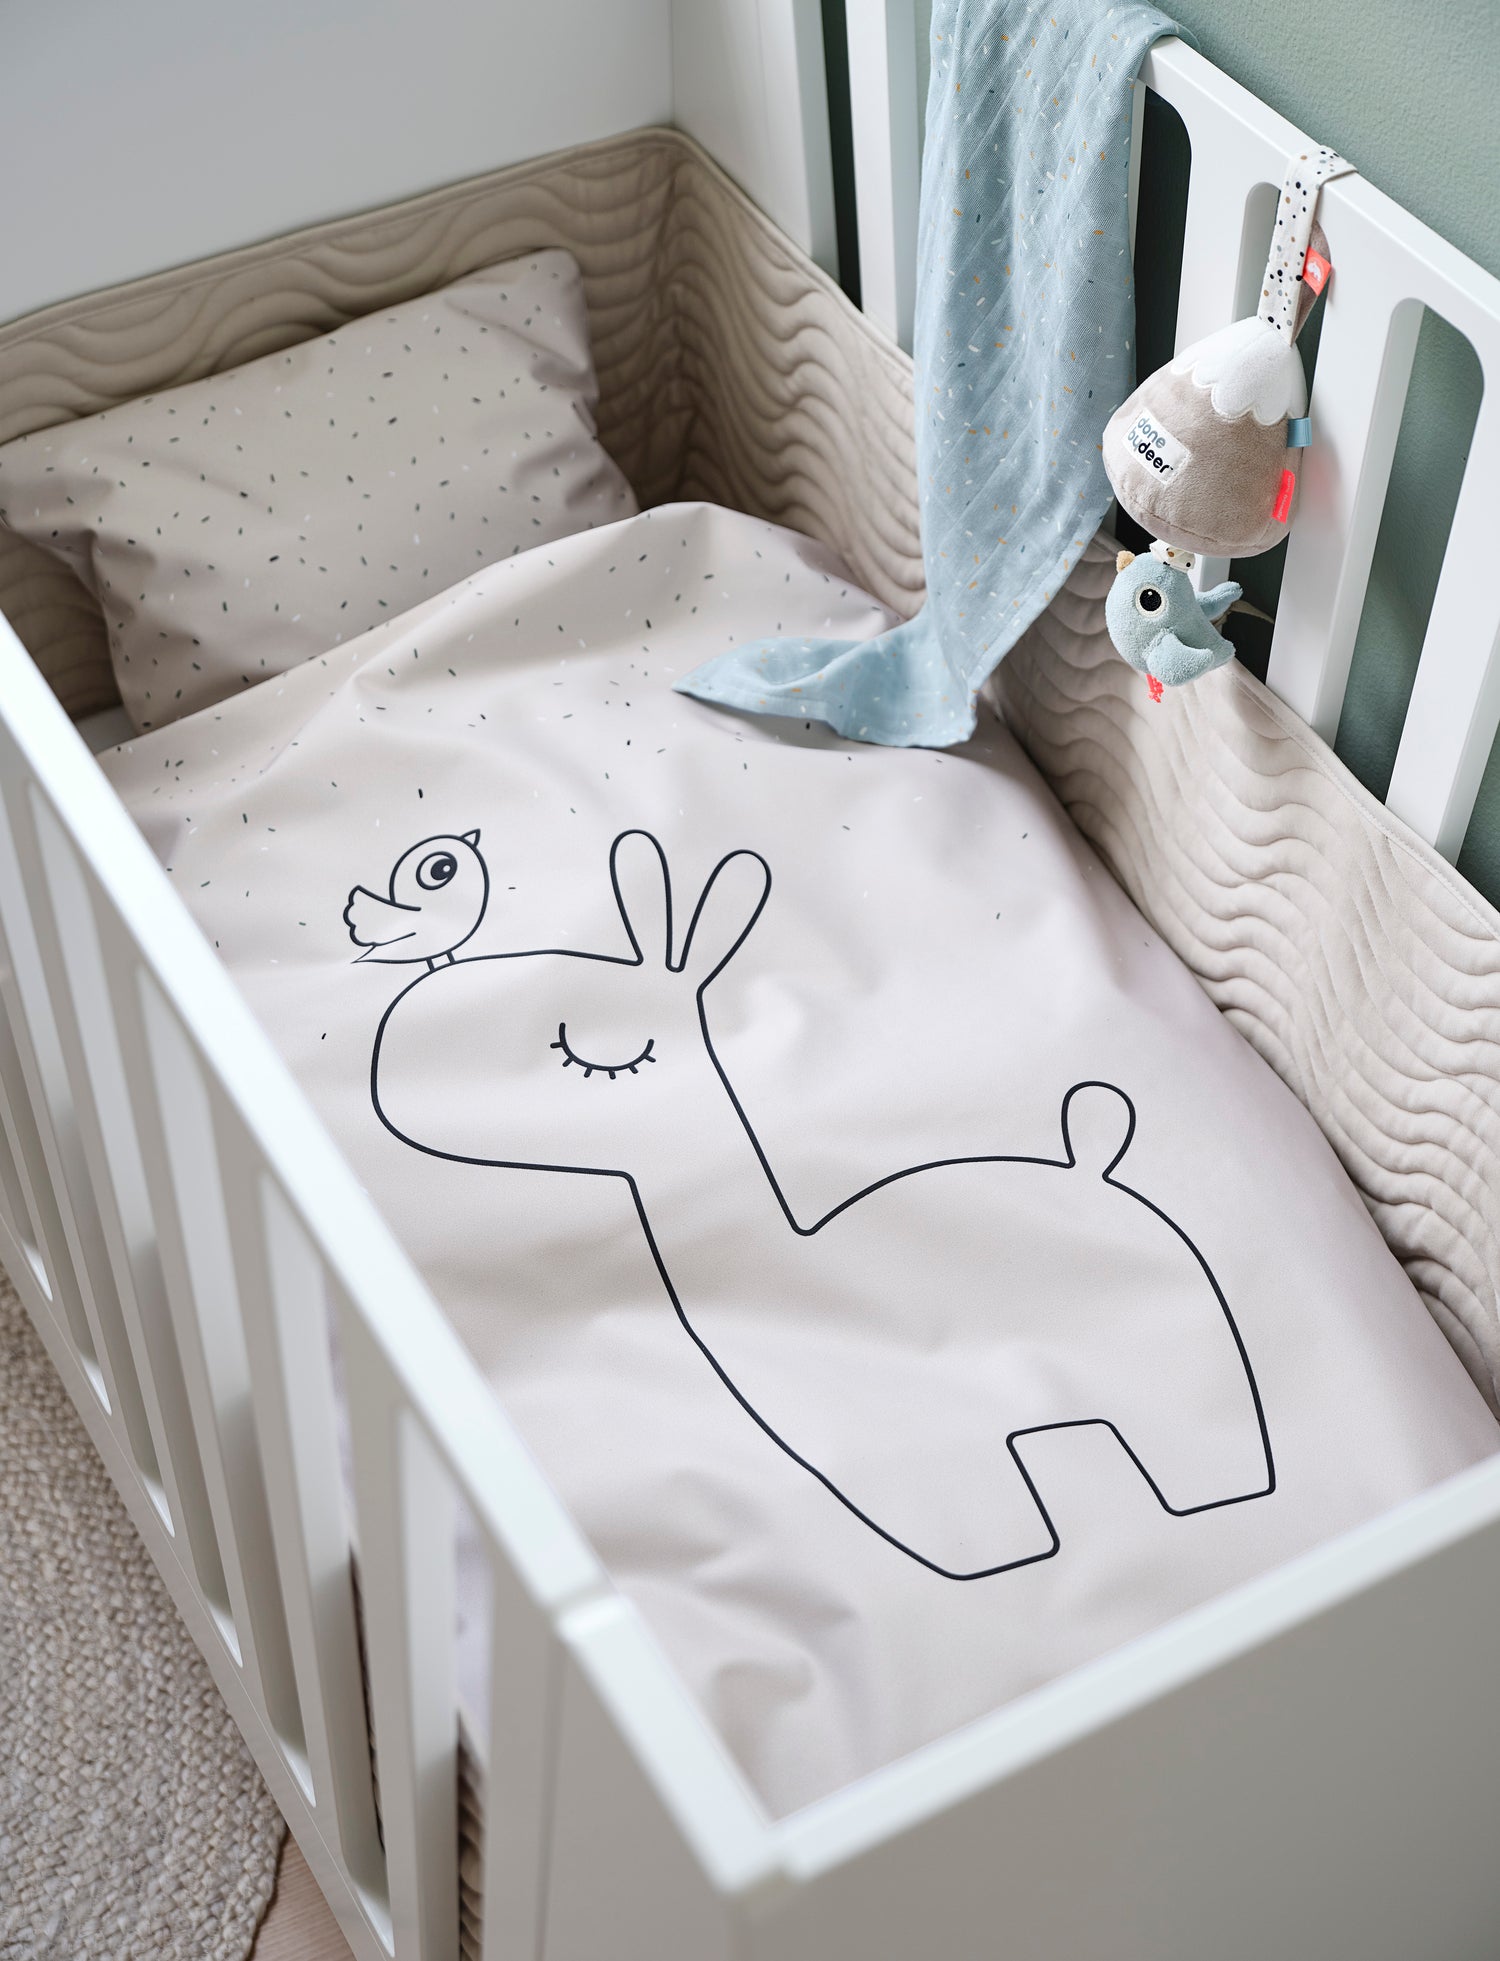 Quand acheter le lit de bébé ? berceau, lit évolutif, panier à langer Babykare.fr